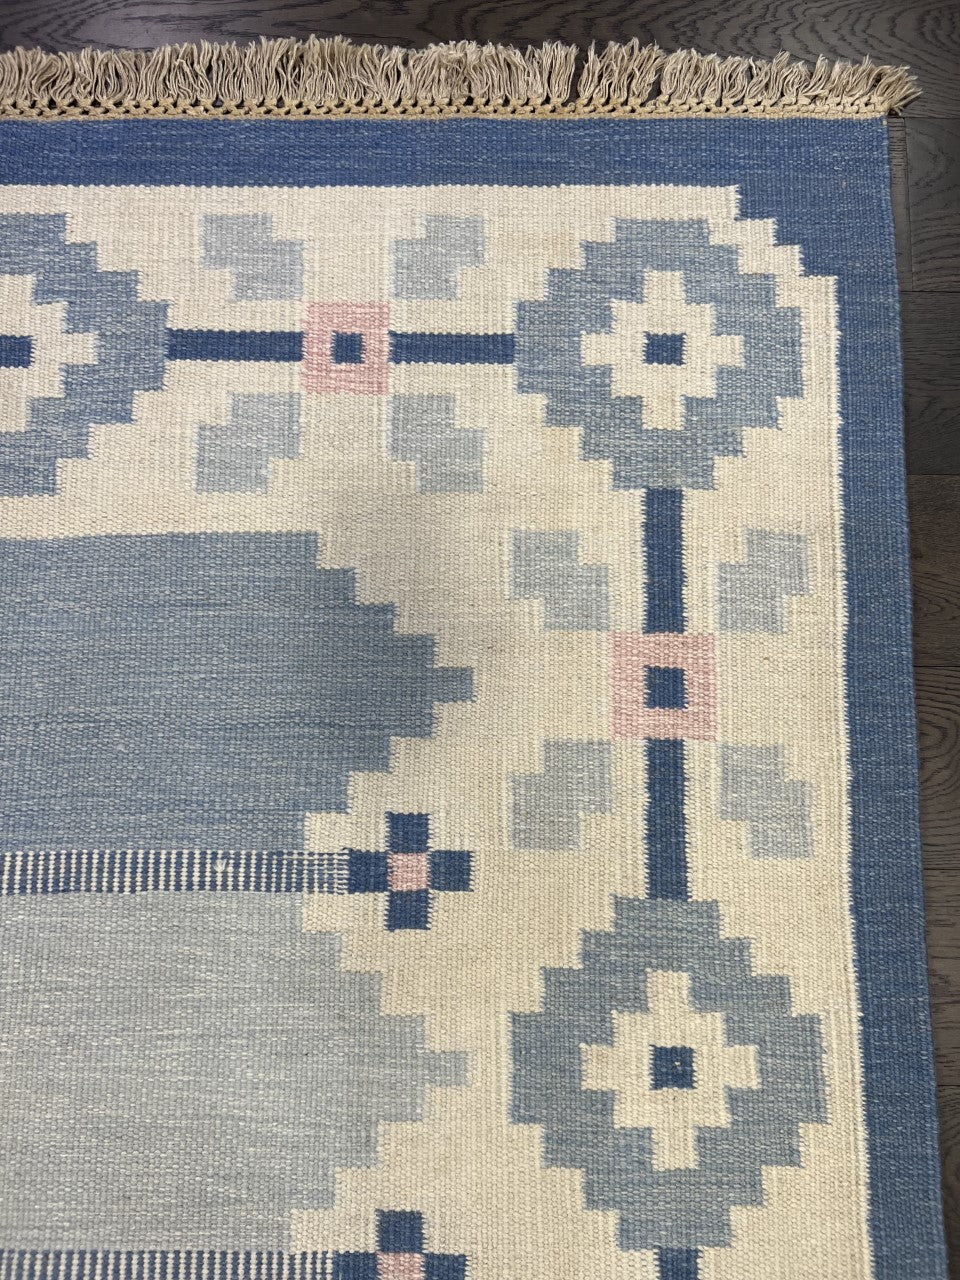 Beautiful Swedish Kilim decorative rug - Hakiemie Rug Gallery